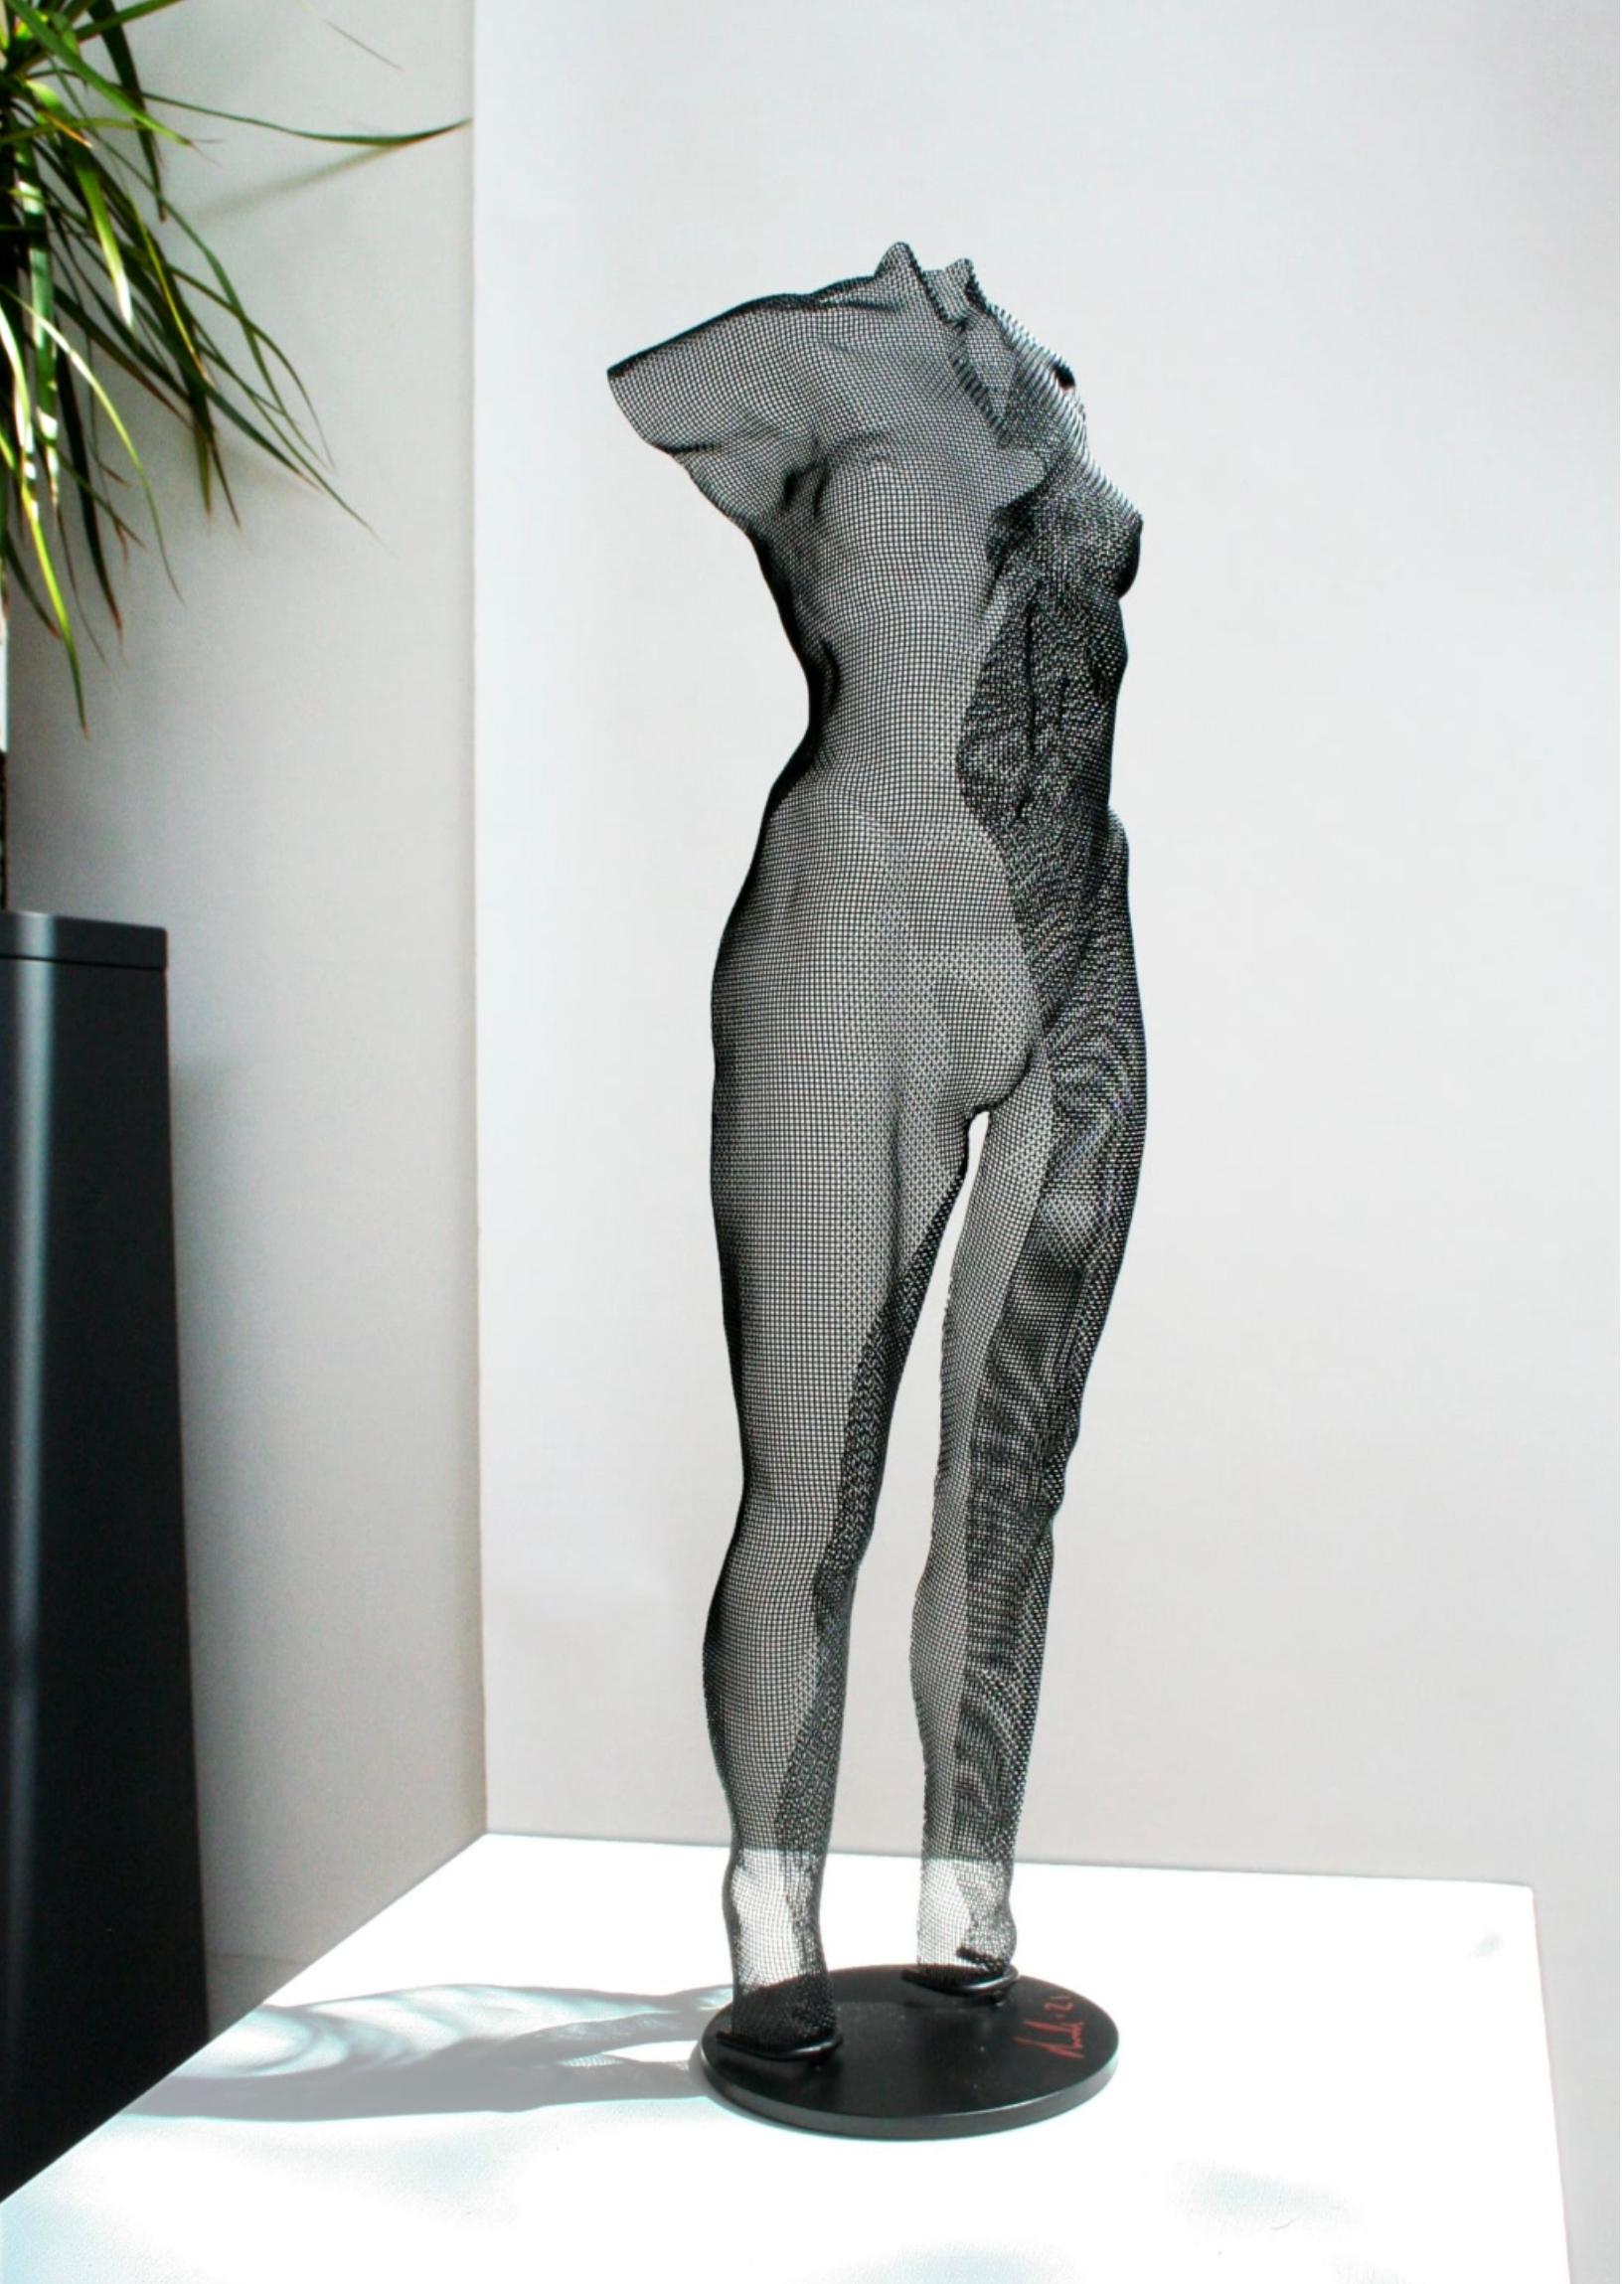 David Begbie Nude Sculpture – YUBE, 2021, Stahlgeflecht-Skulptur